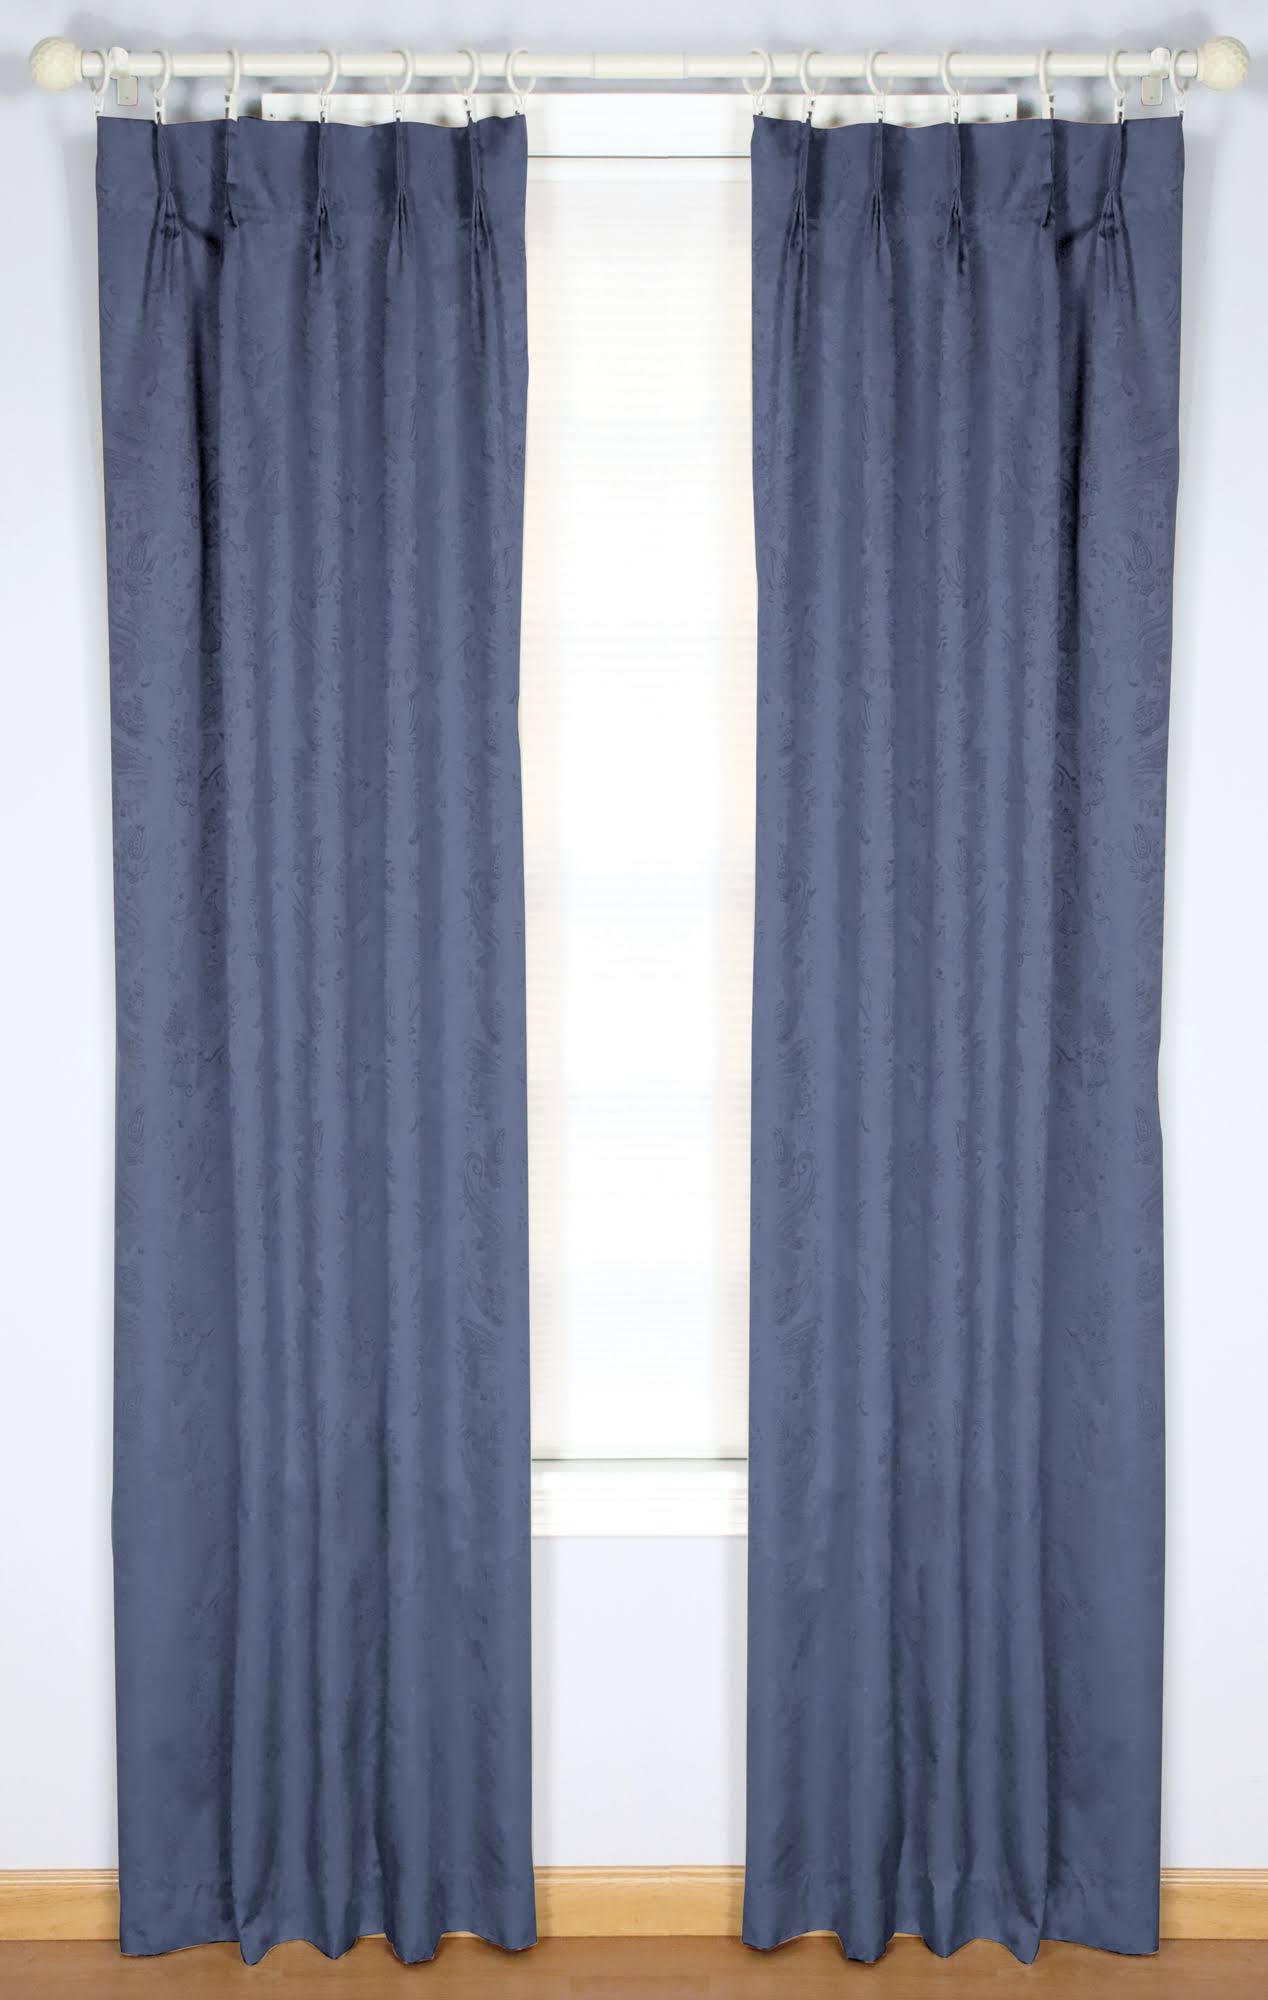 Gabrielle Pinch Pleat Curtain Pair, 48 x 84, Federal Blue